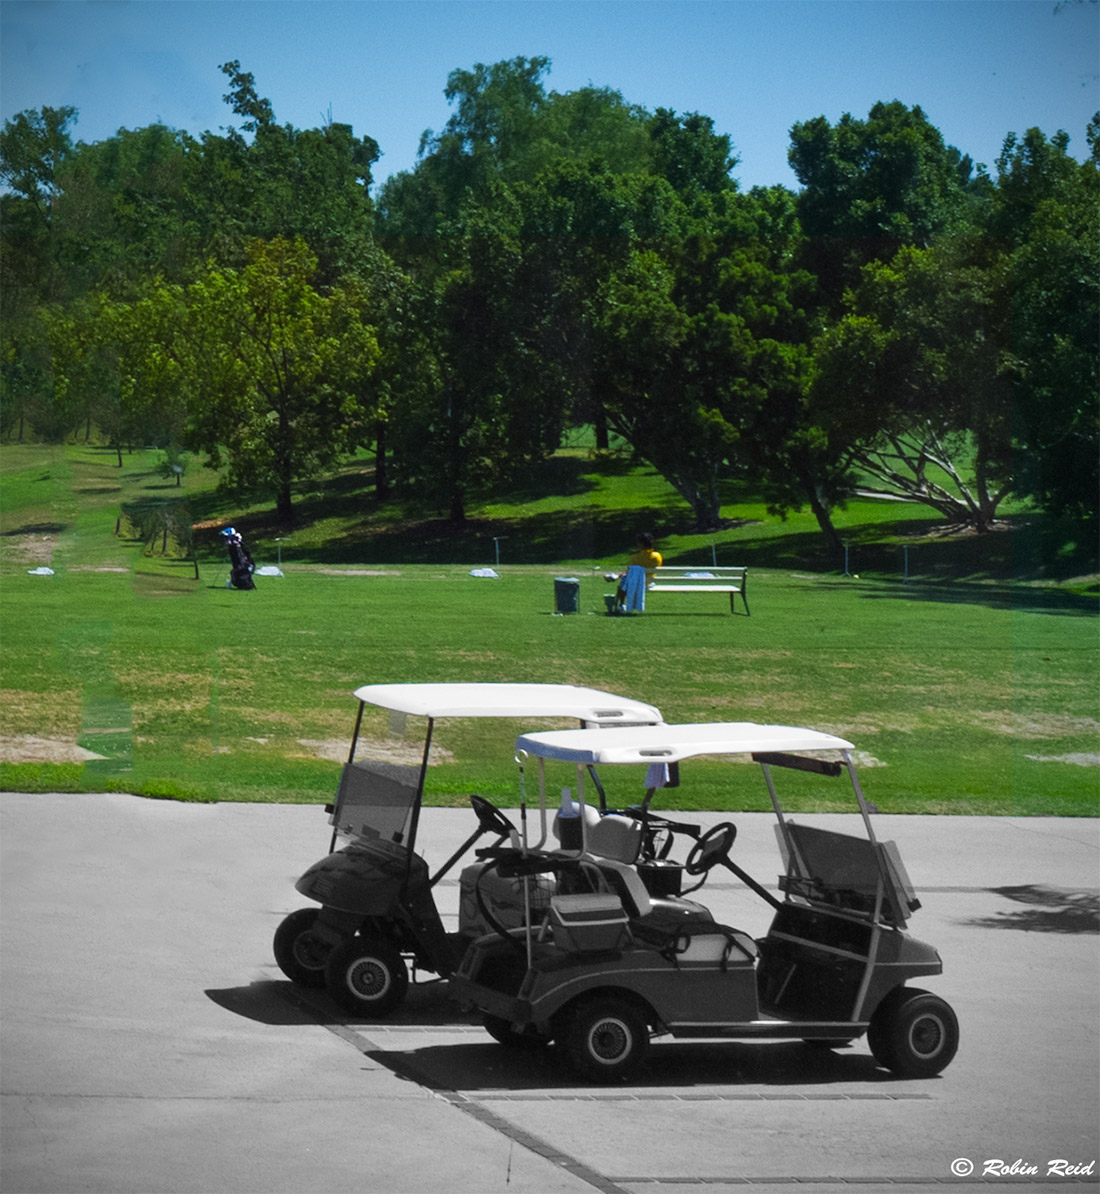 Rancho Bernardo Inn Golf Course